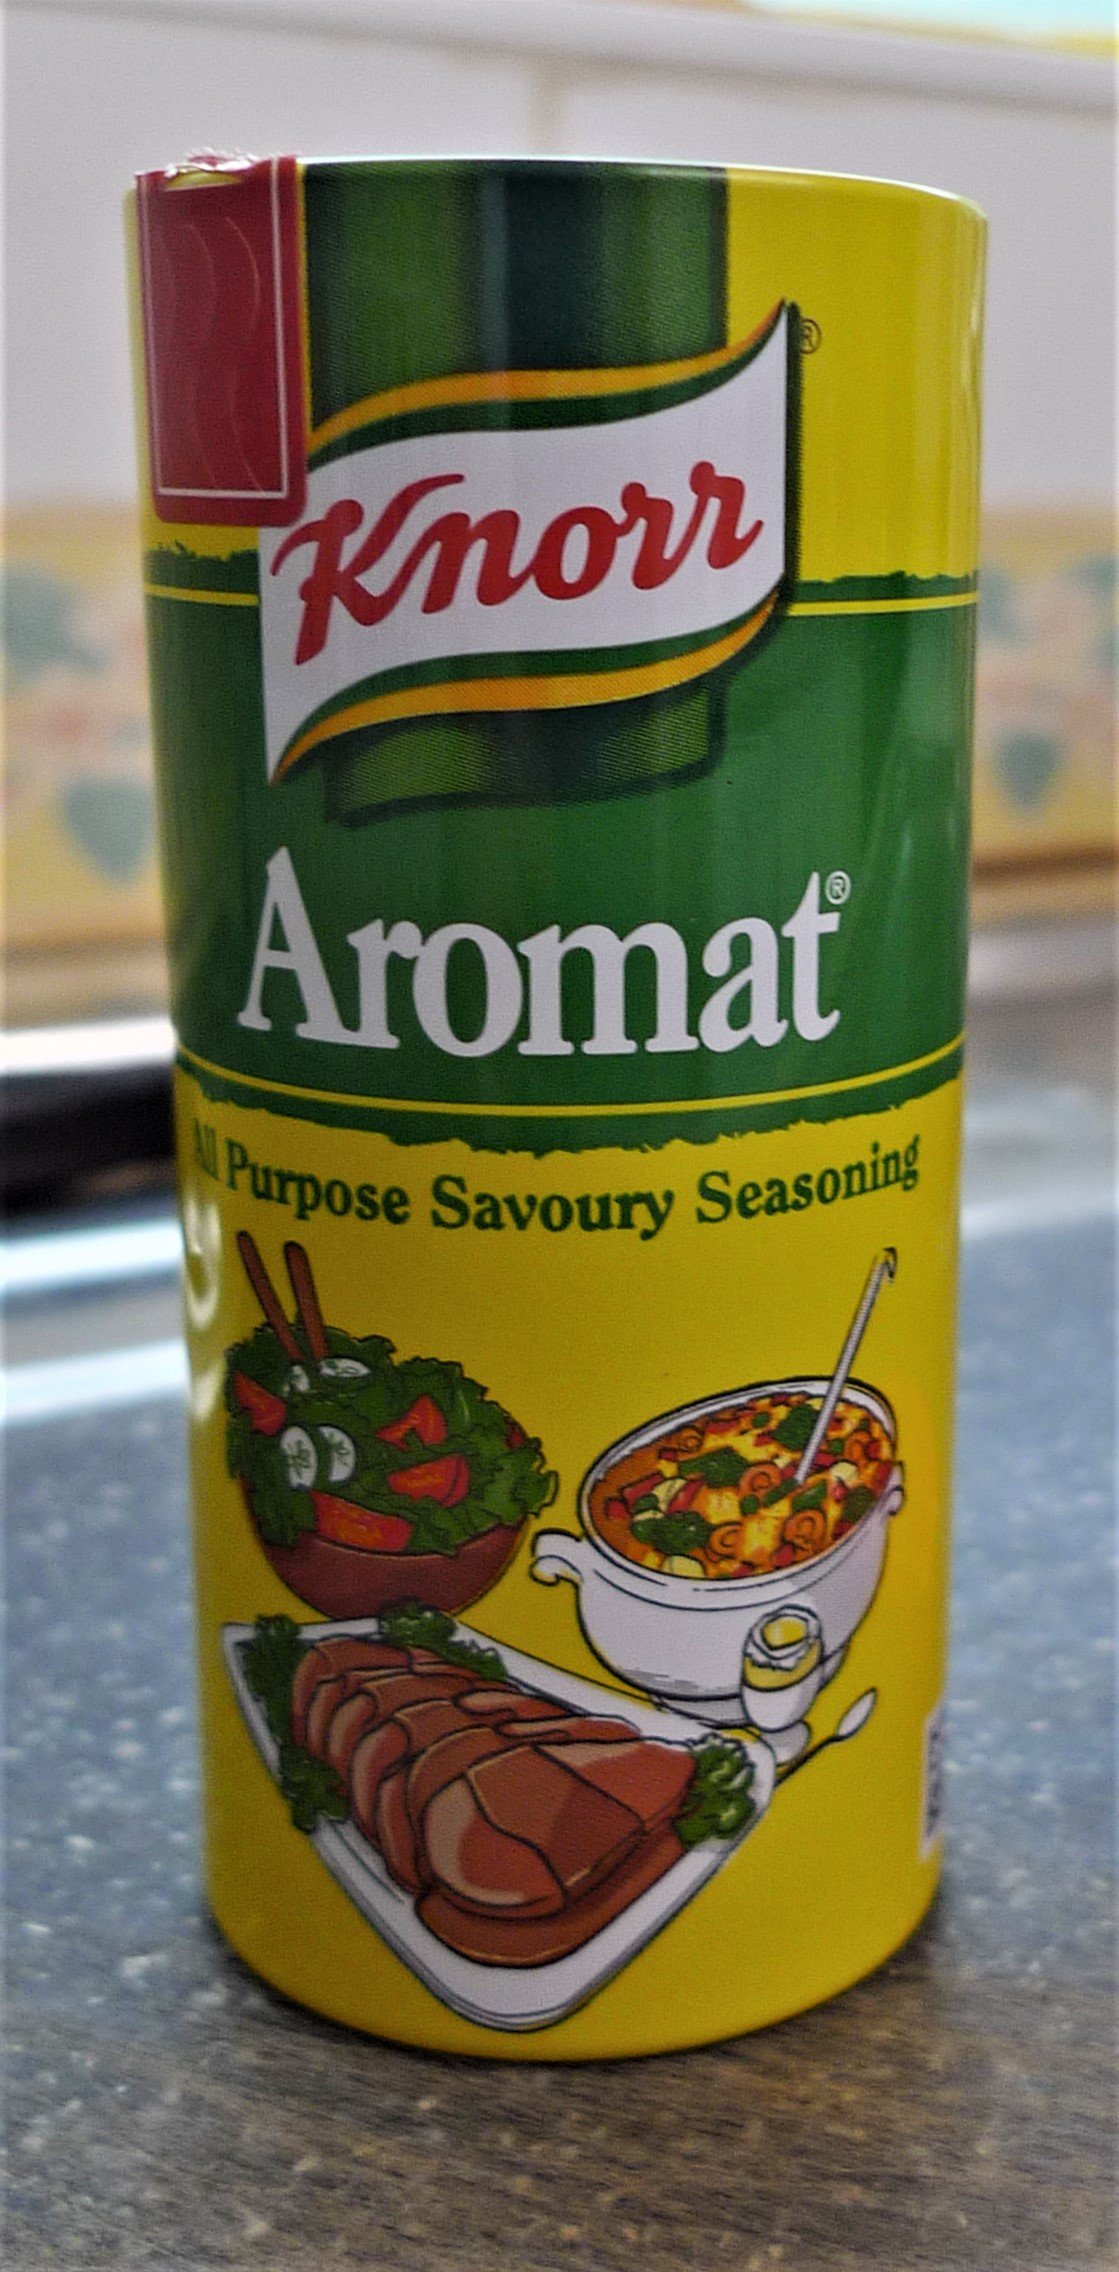 Aromat - Wikipedia